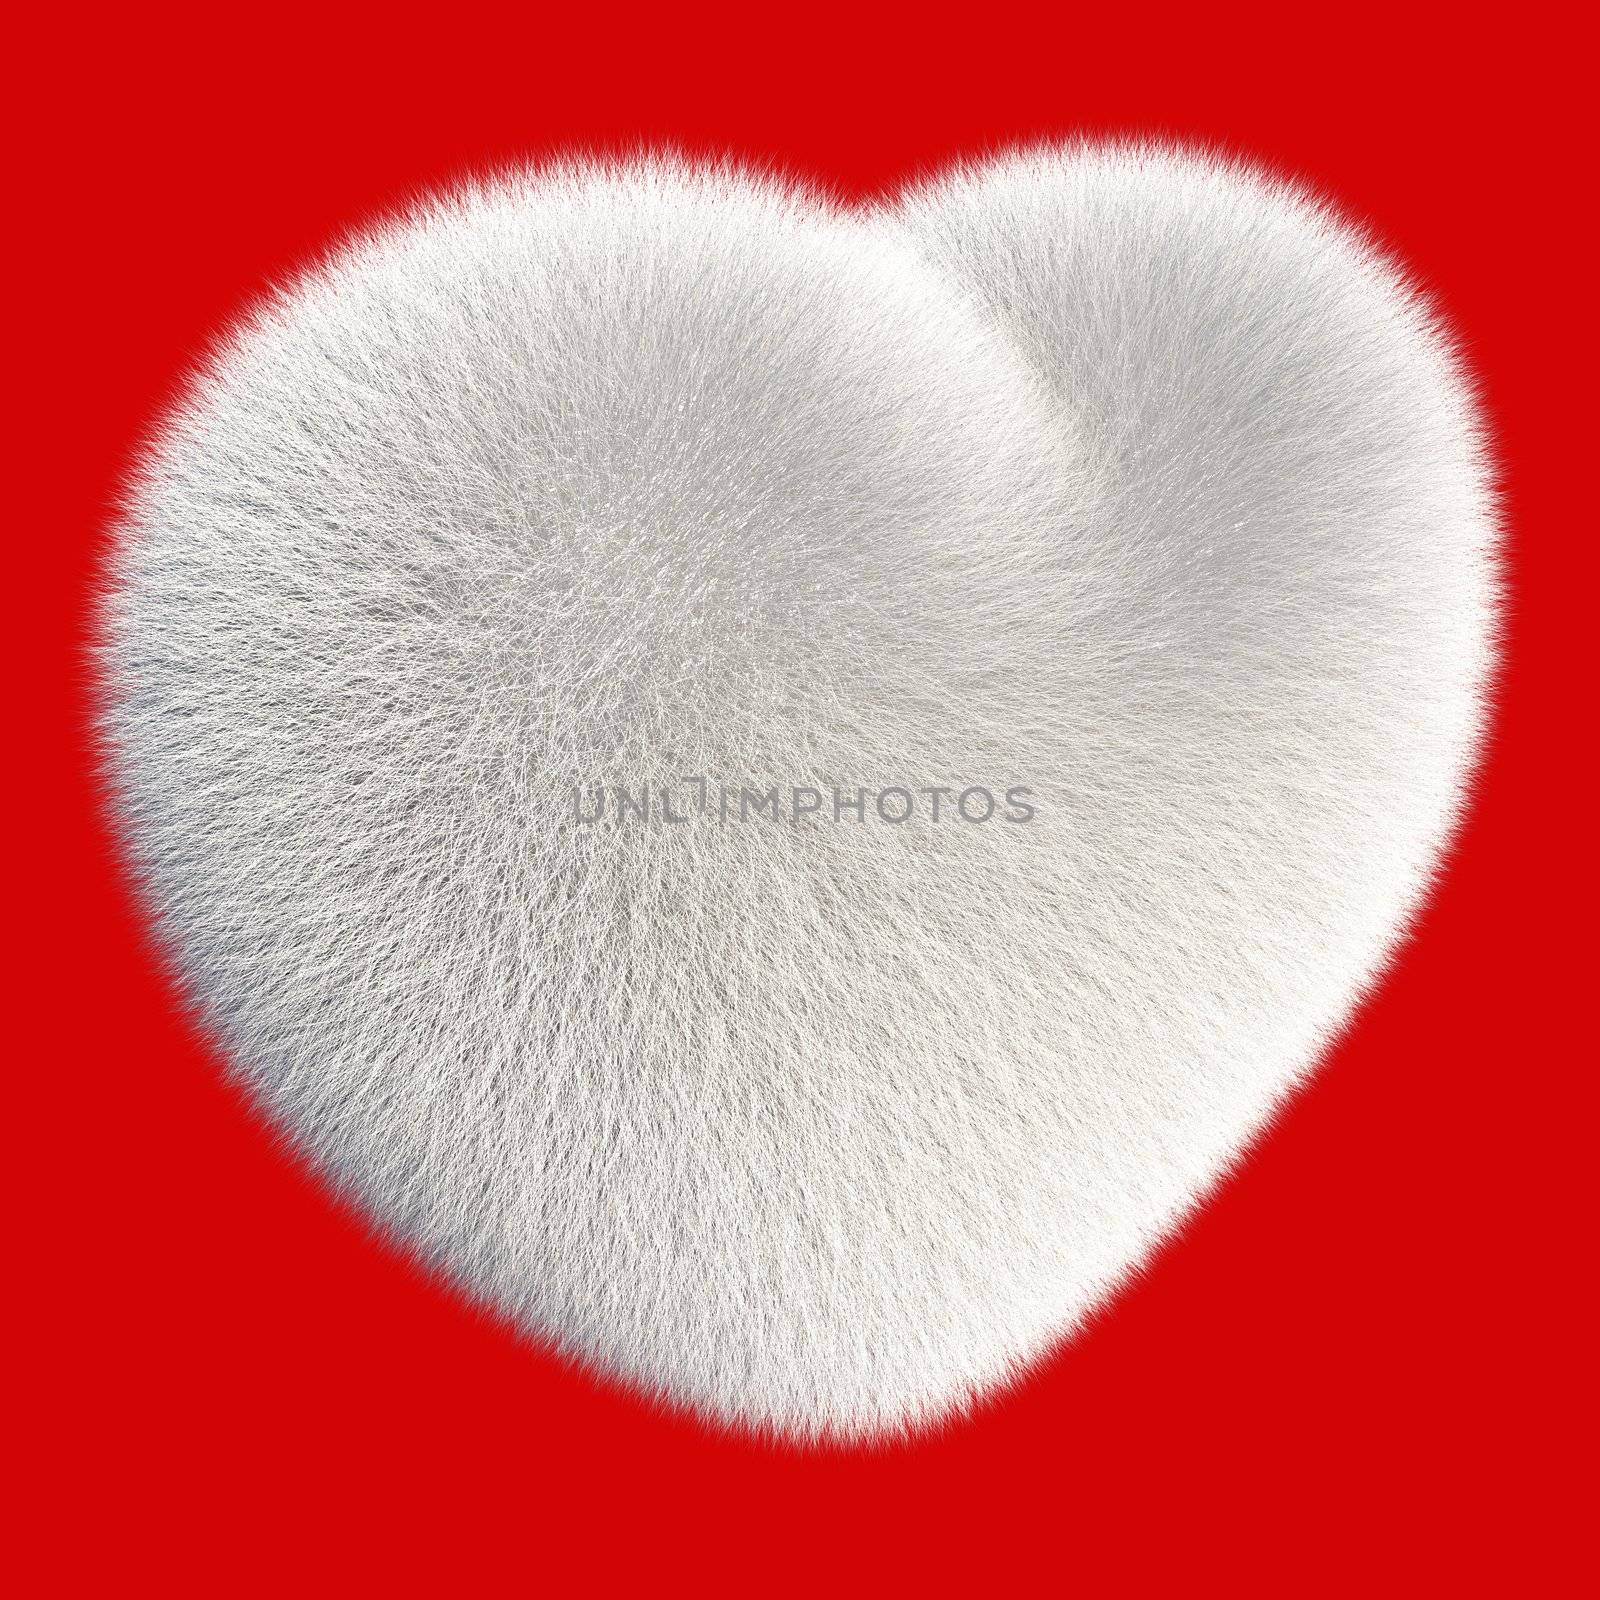 White fur heart by richwolf